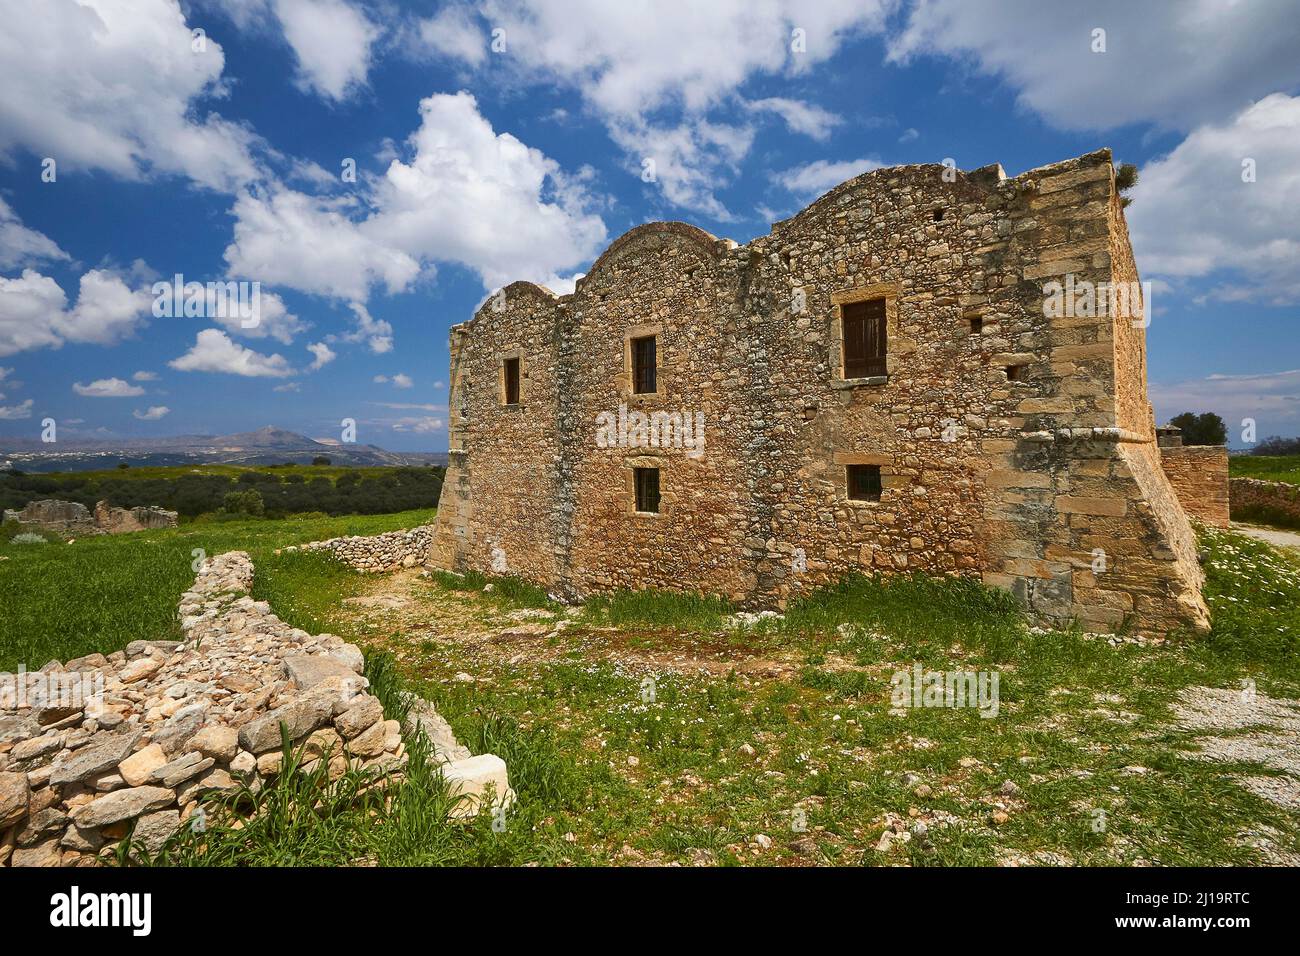 Frühling auf Kreta, dreischiffiger Klosterbau aus dem frühen Mittelalter, Steinmauer, blauer Himmel mit Schönwetterwolken, man kann die Akrotiri sehen Stockfoto